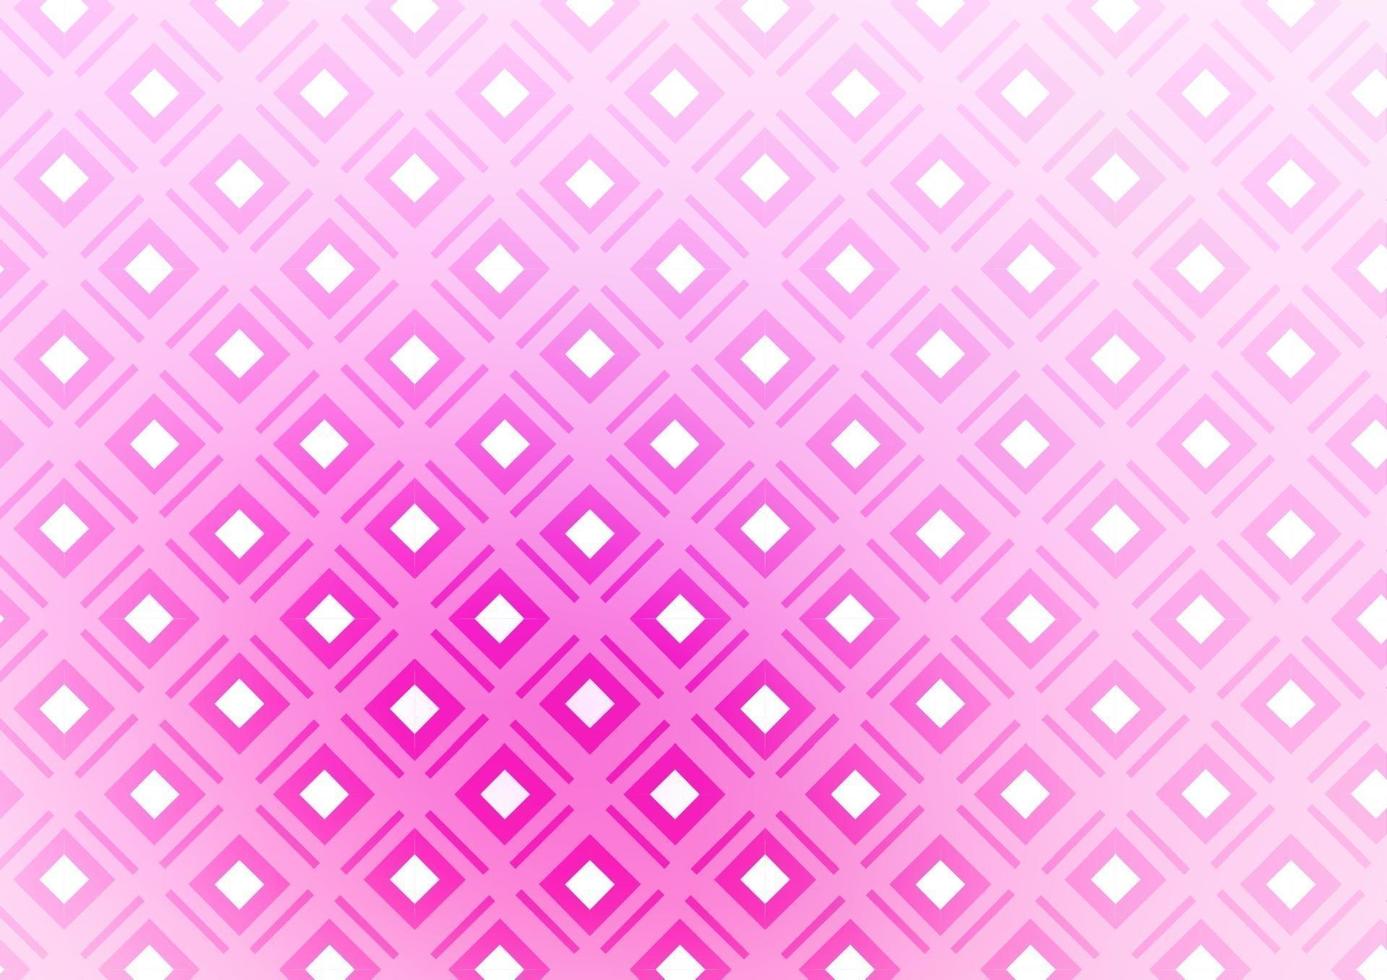 modelo de vetor rosa claro, azul com varas, quadrados.